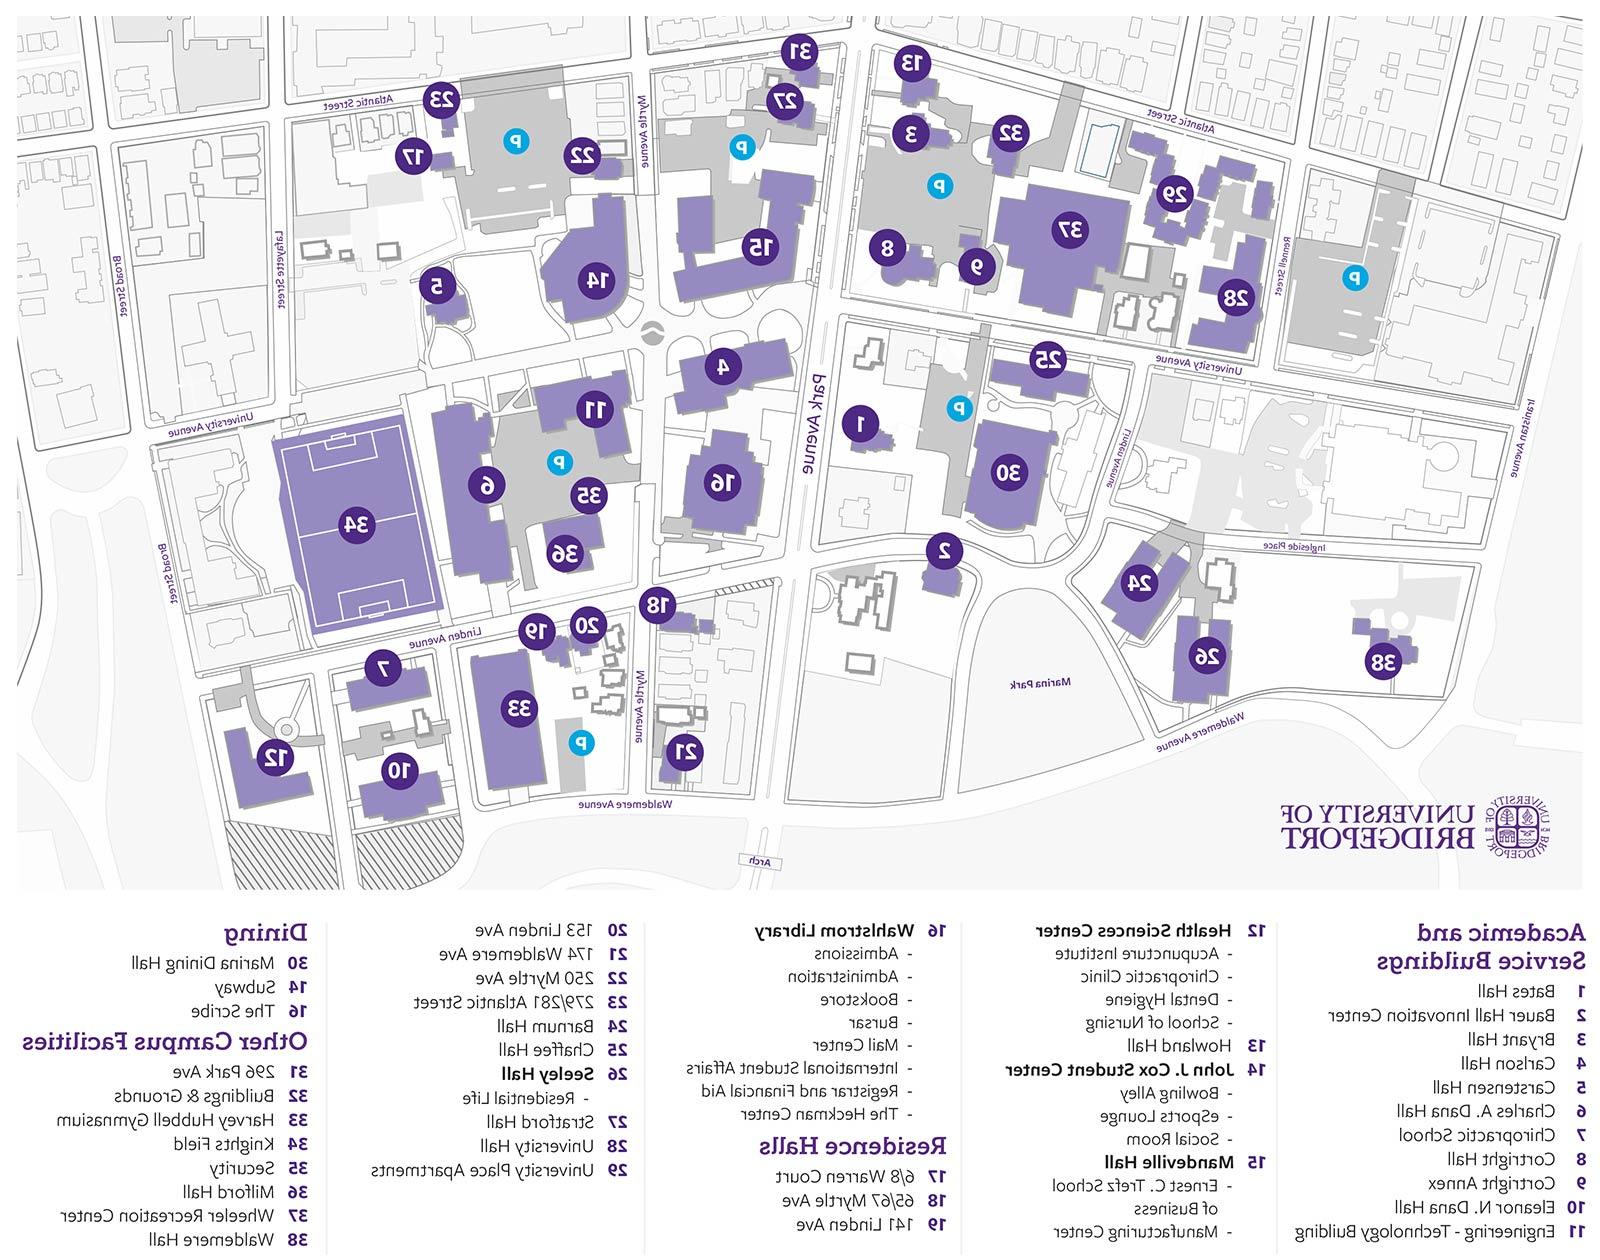 UB Campus Map